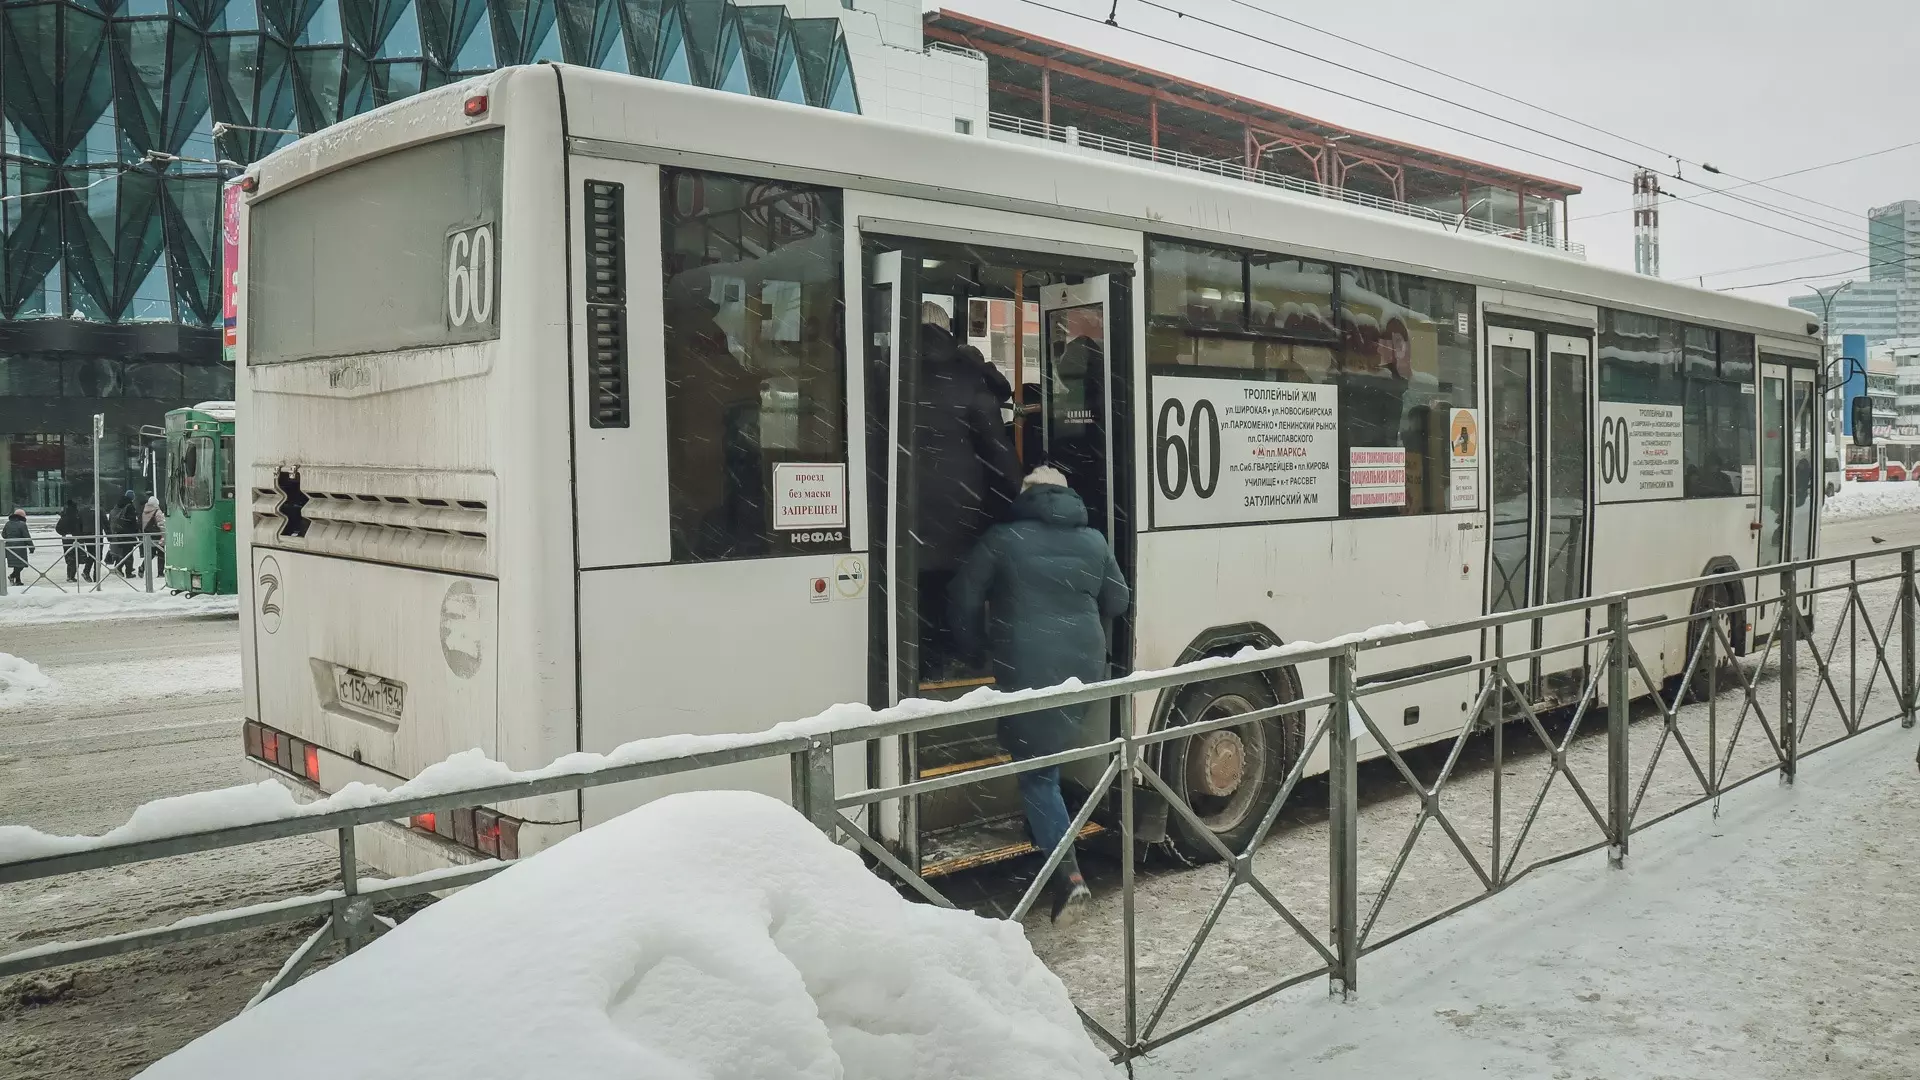 С помощью QR-кодов оренбуржцы узнают расписание маршрутов автобусов